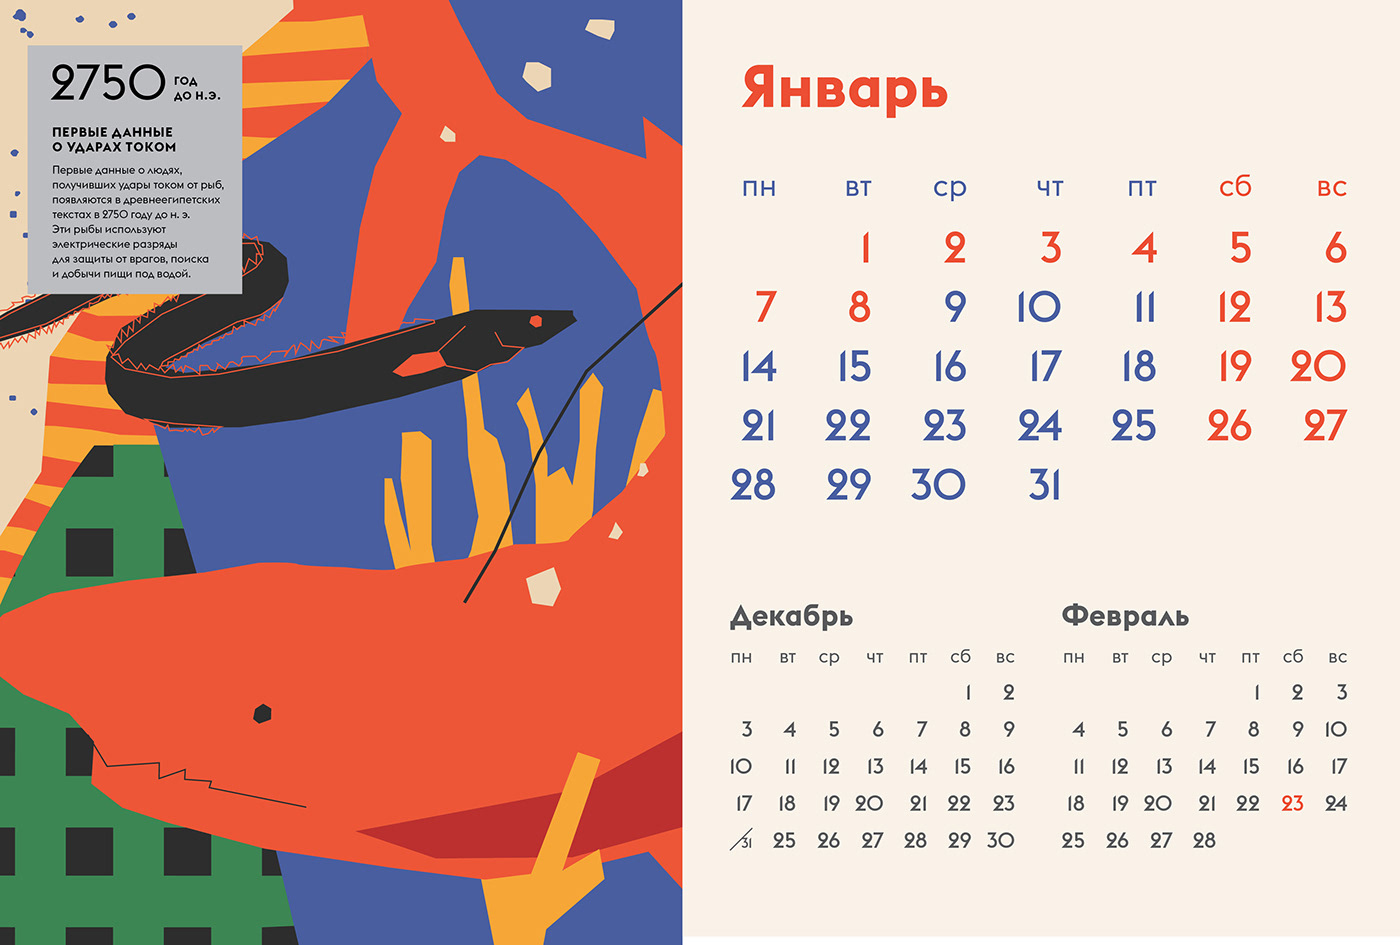 calendar calendar 2019 календарь календарь 2019 иллюстрация ILLUSTRATION  electricity электричество